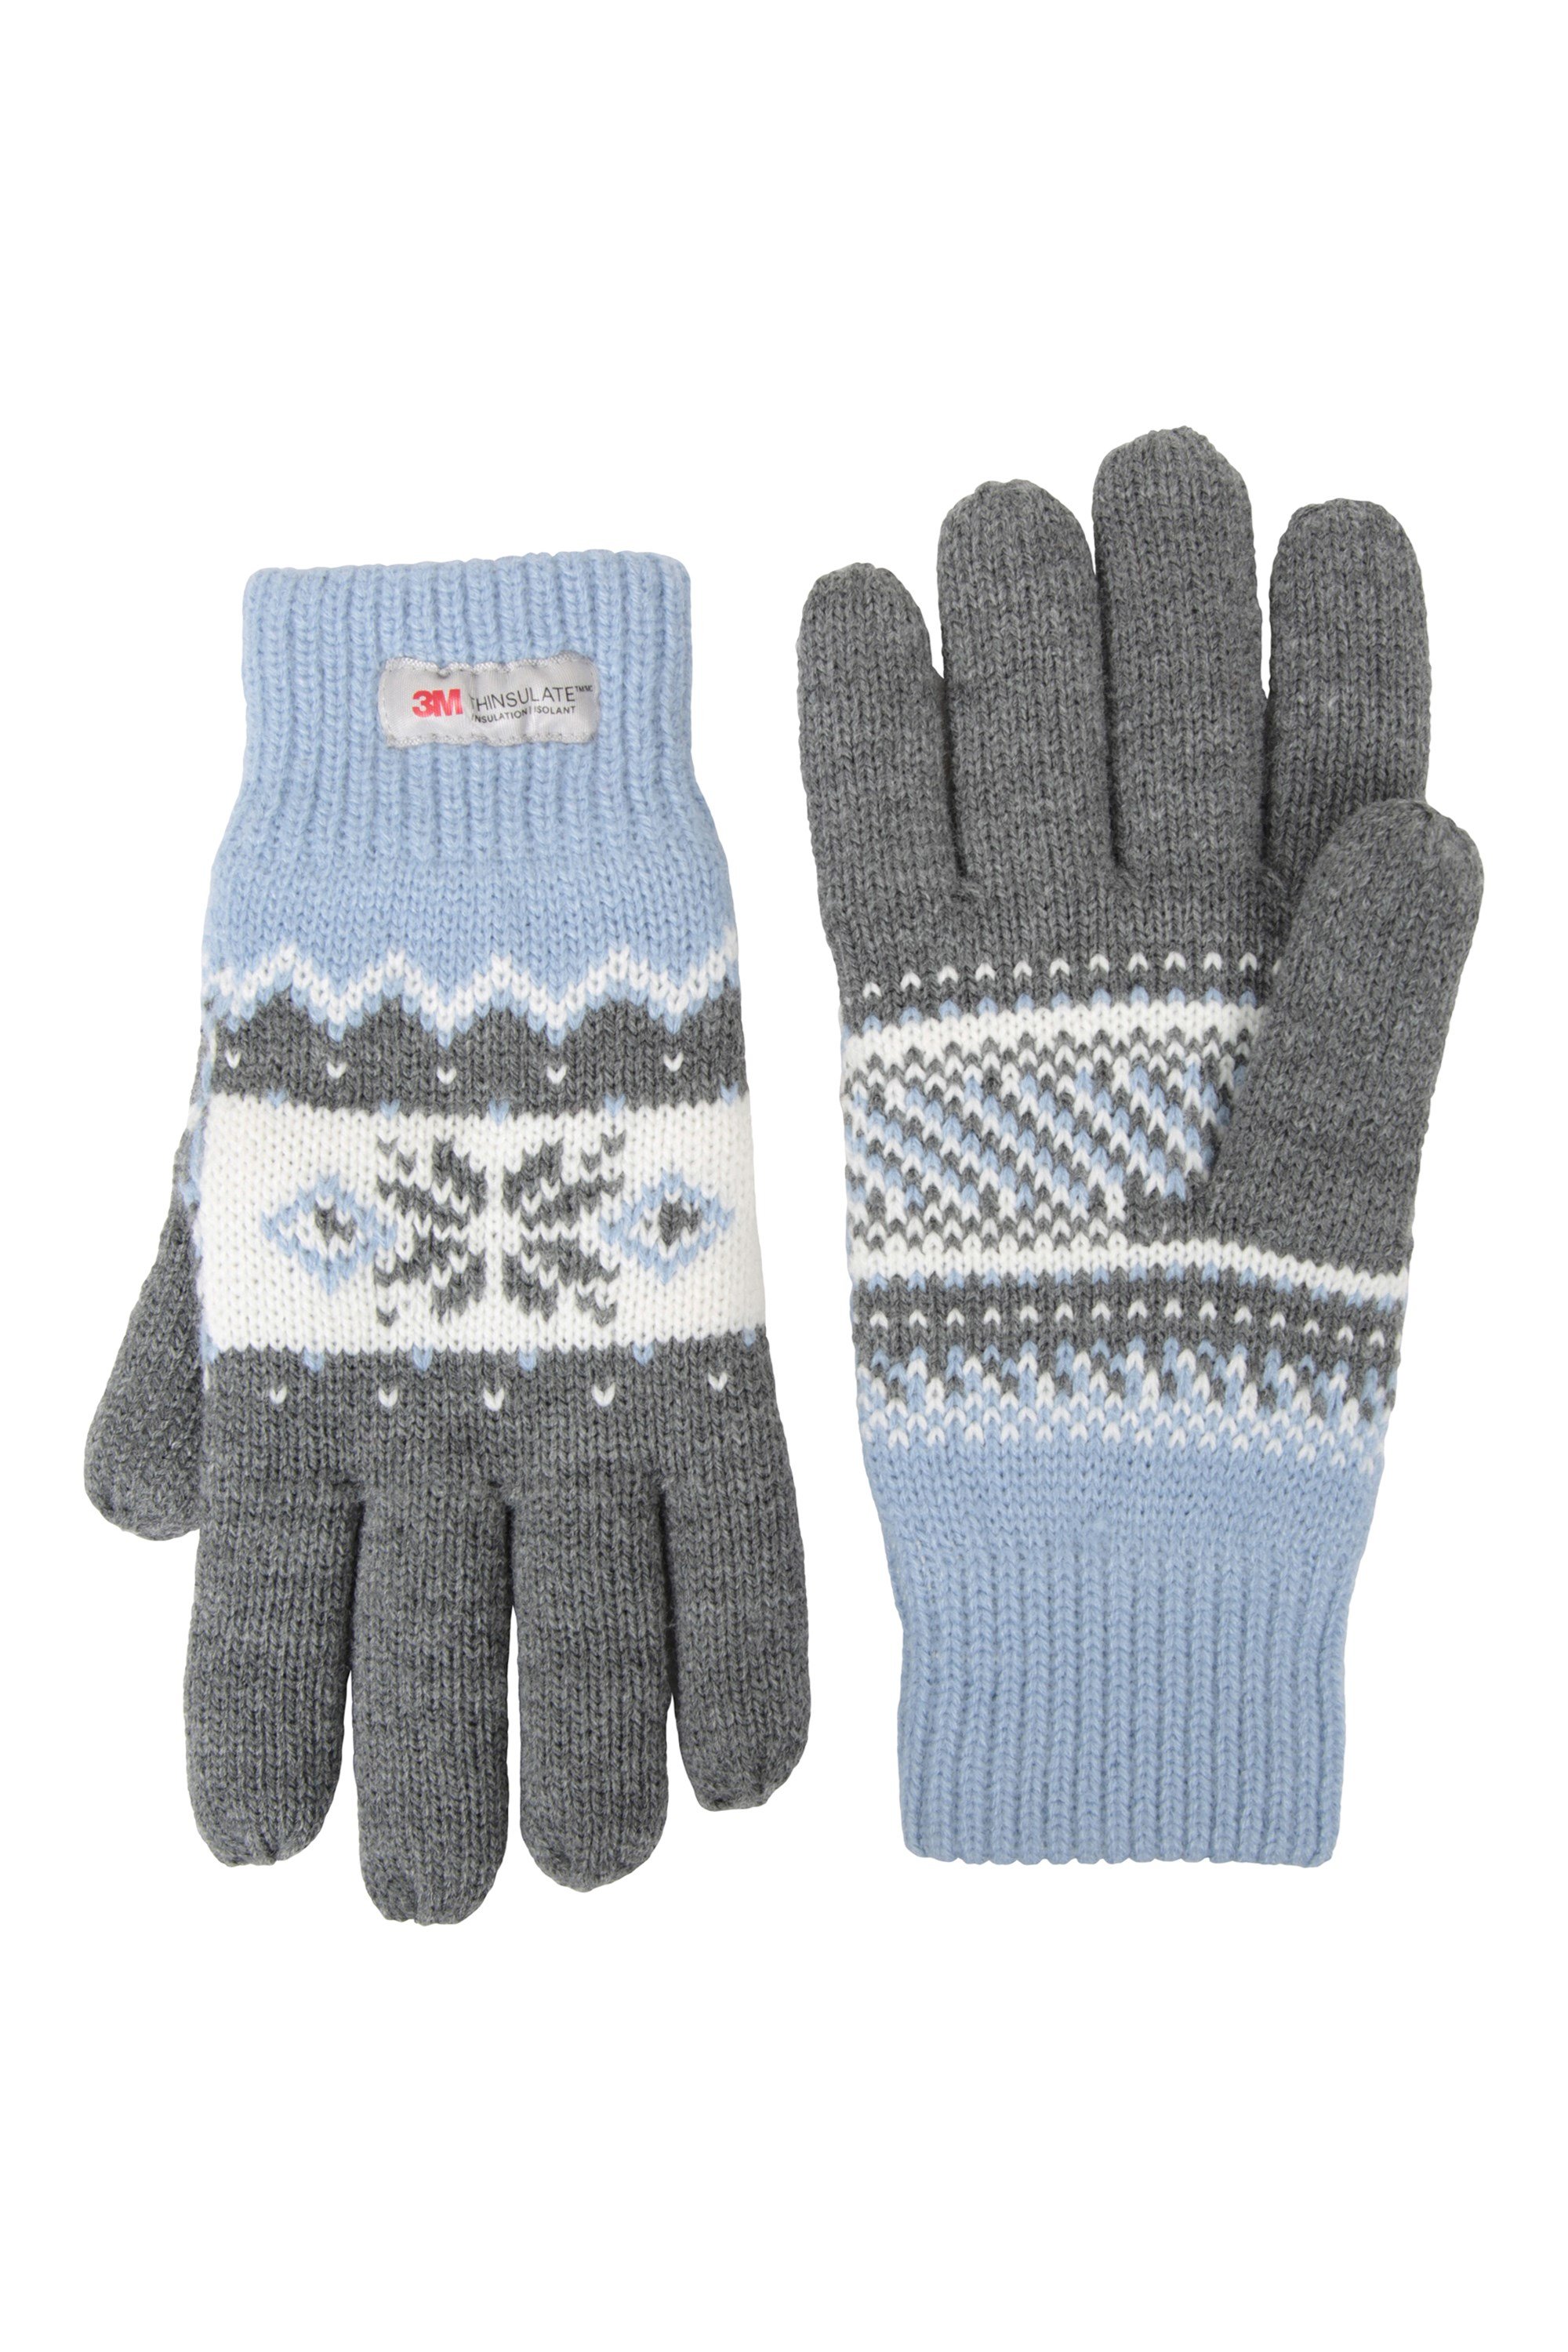 Thinsulate Fairisle Womens Gloves - Grey